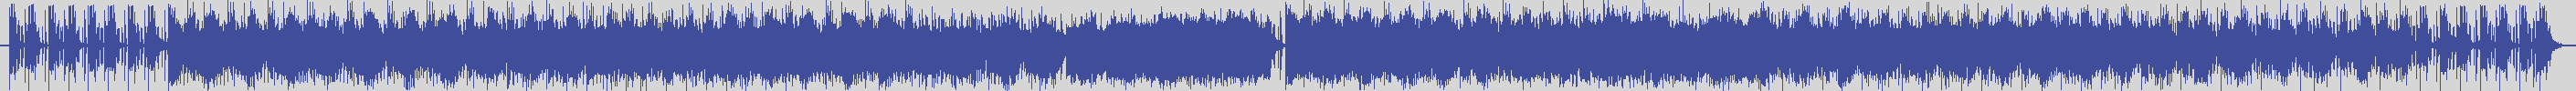 upr [UPR010] David Carretta - Wild in Blue [Original Mix] audio wave form